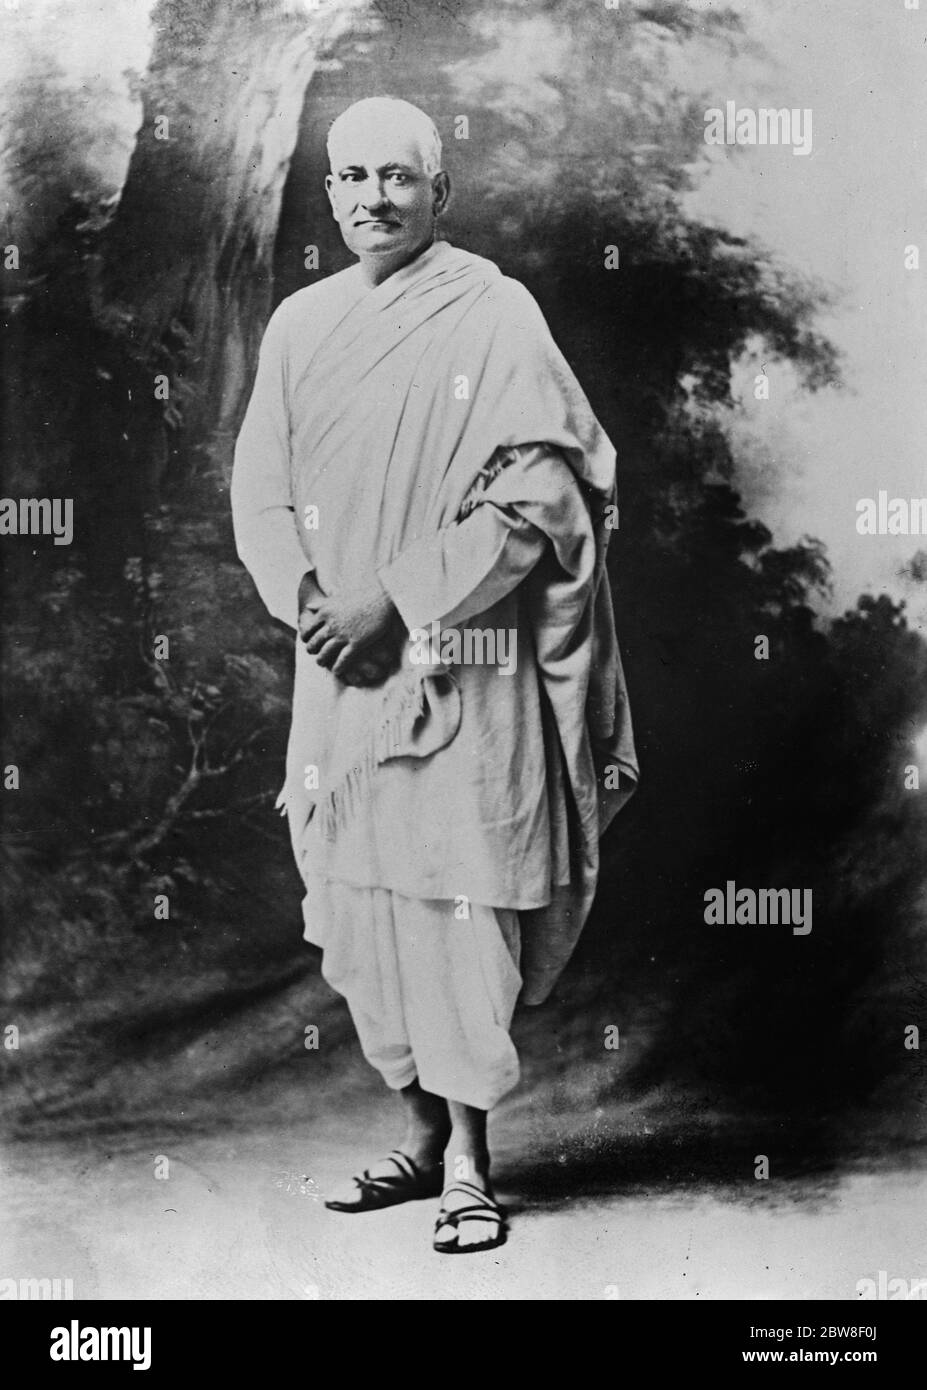 Der Mann, der für die vollständige Unabhängigkeit in Indien bewegt. Ein neues Foto von Srijut Pundit Motilal Nehru, der den Antrag der "völligen Unabhängigkeit" für Indien vor dem Nationalkongress brachte "einmal ein führender Anwalt in Nordindien, pflegte er seine Kleidung nach Paris jede Woche für Waschzwecke zu senden. Auf dem Bild ist er in kompletter einheimischer Kleidung zu sehen. 10 März 1930 Stockfoto